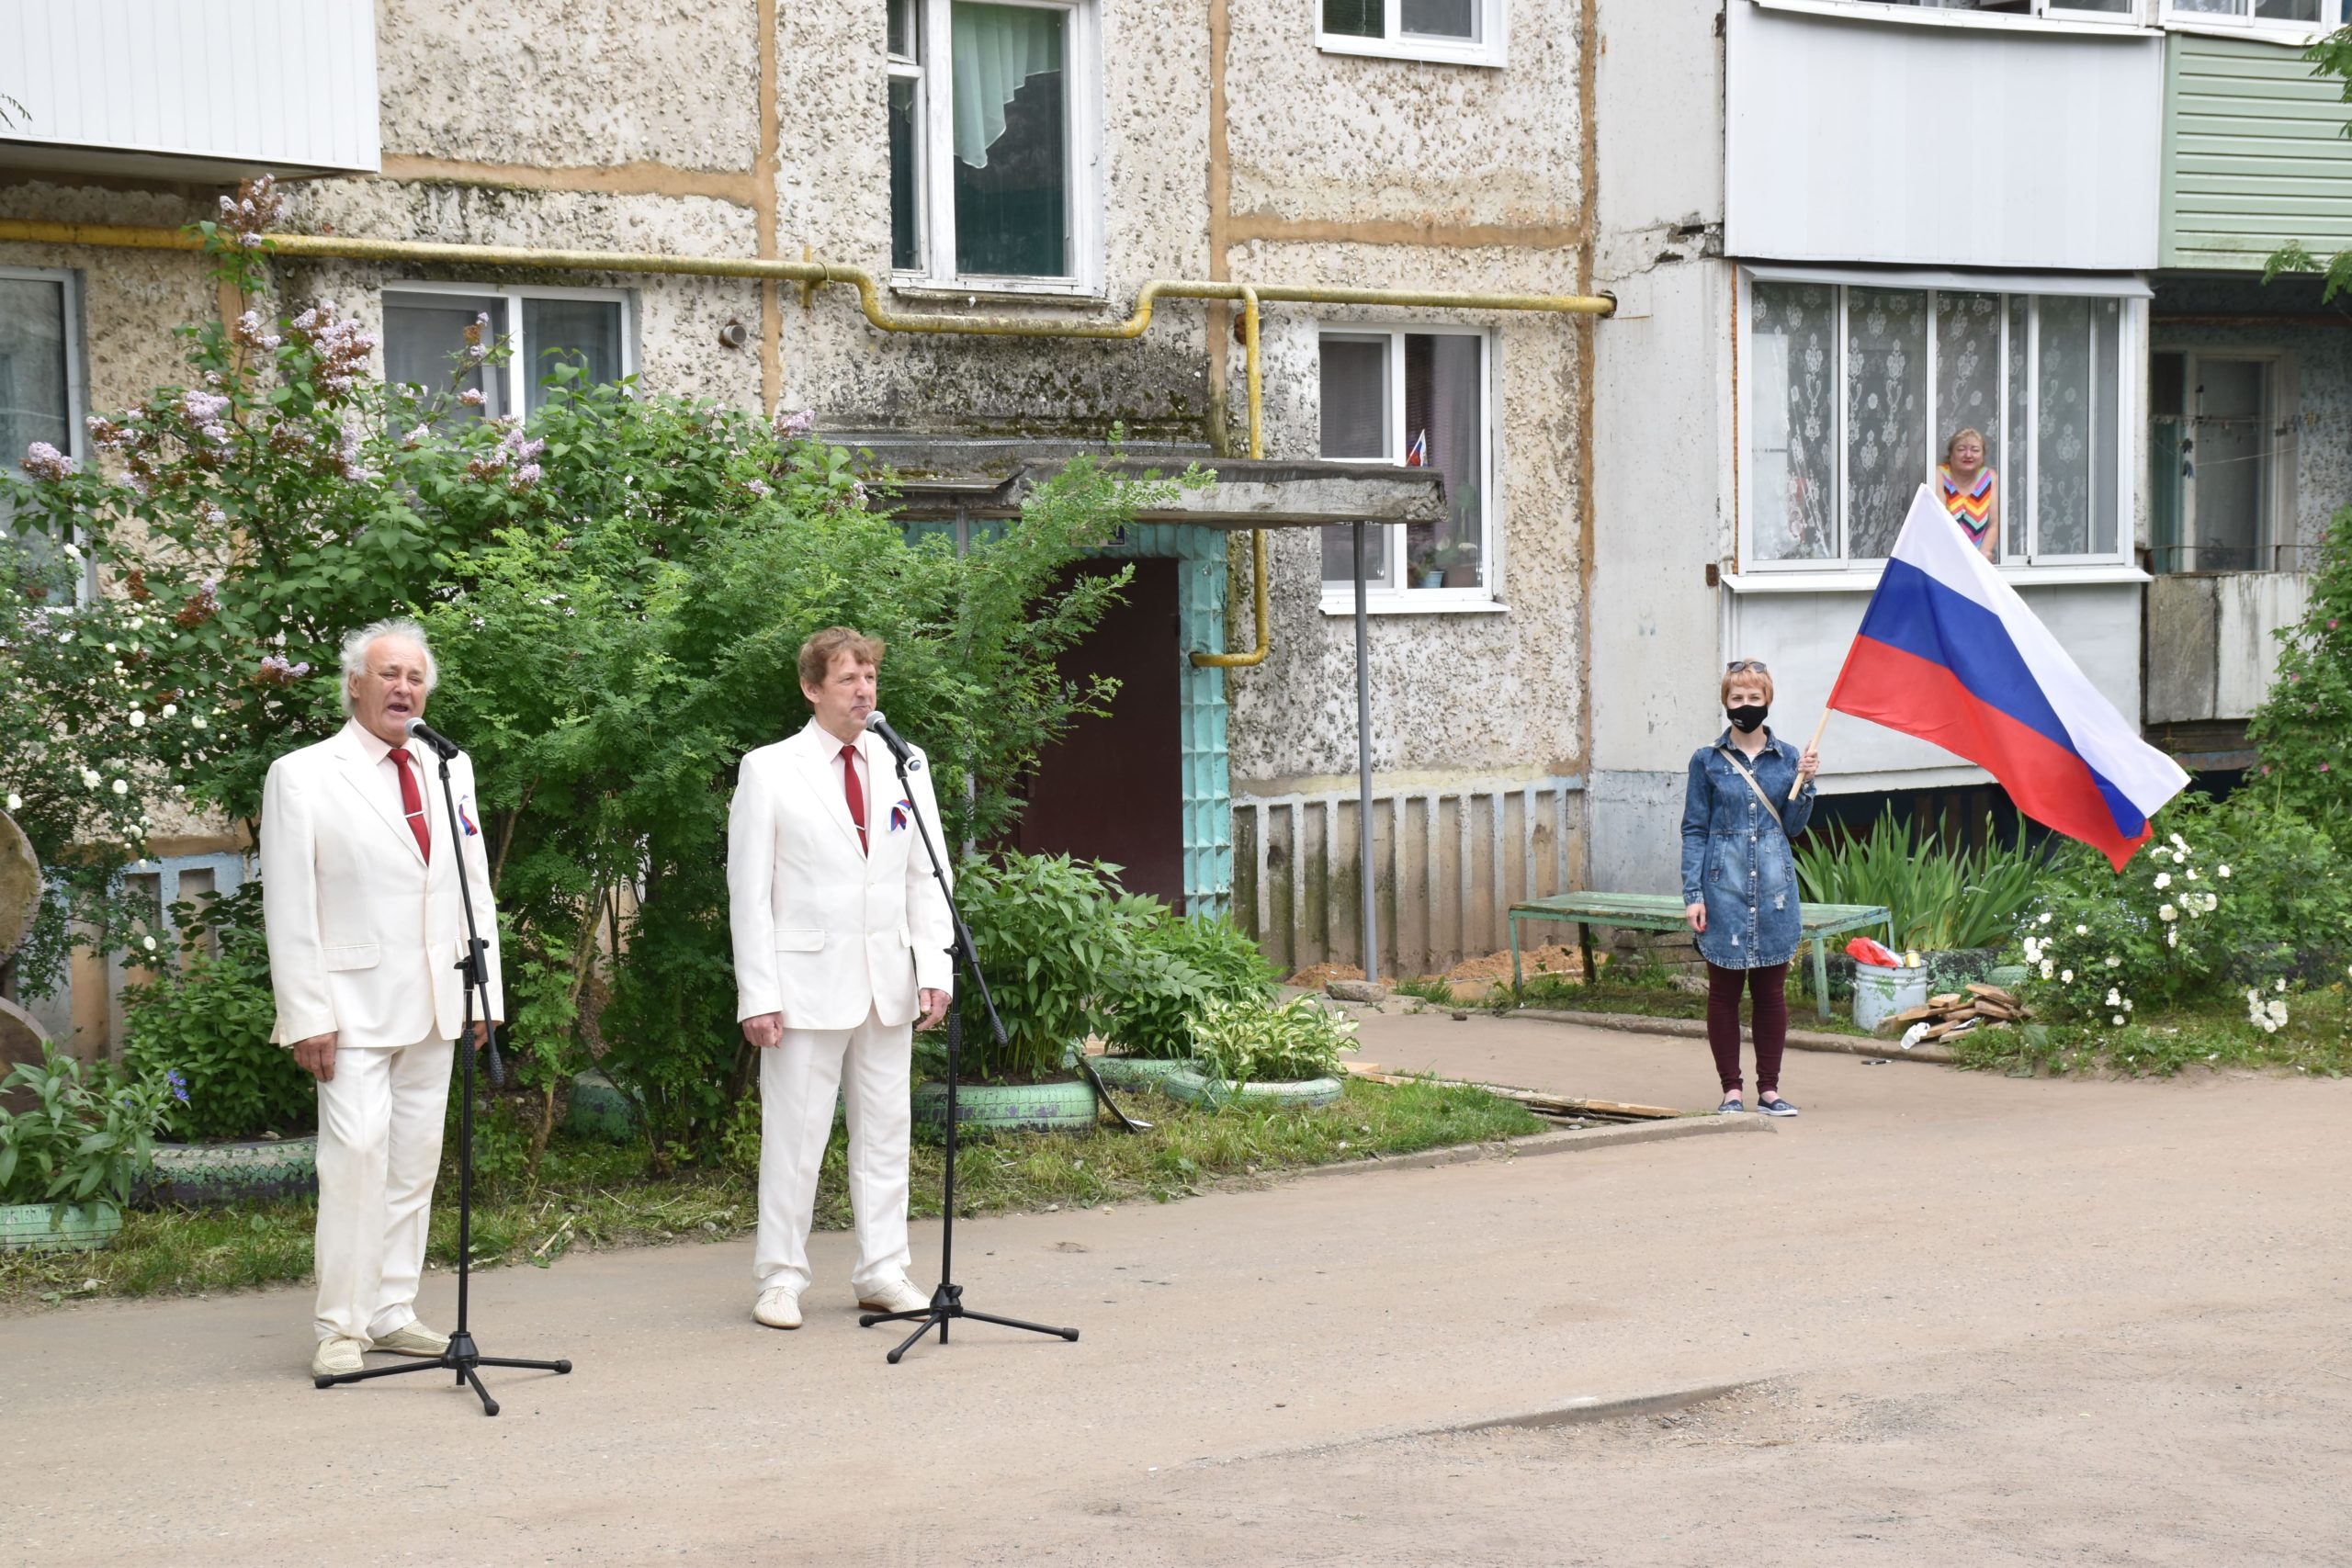 12 июня жители Шуйского муниципального района присоединились к Общероссийской акции #МЫРОССИЯ